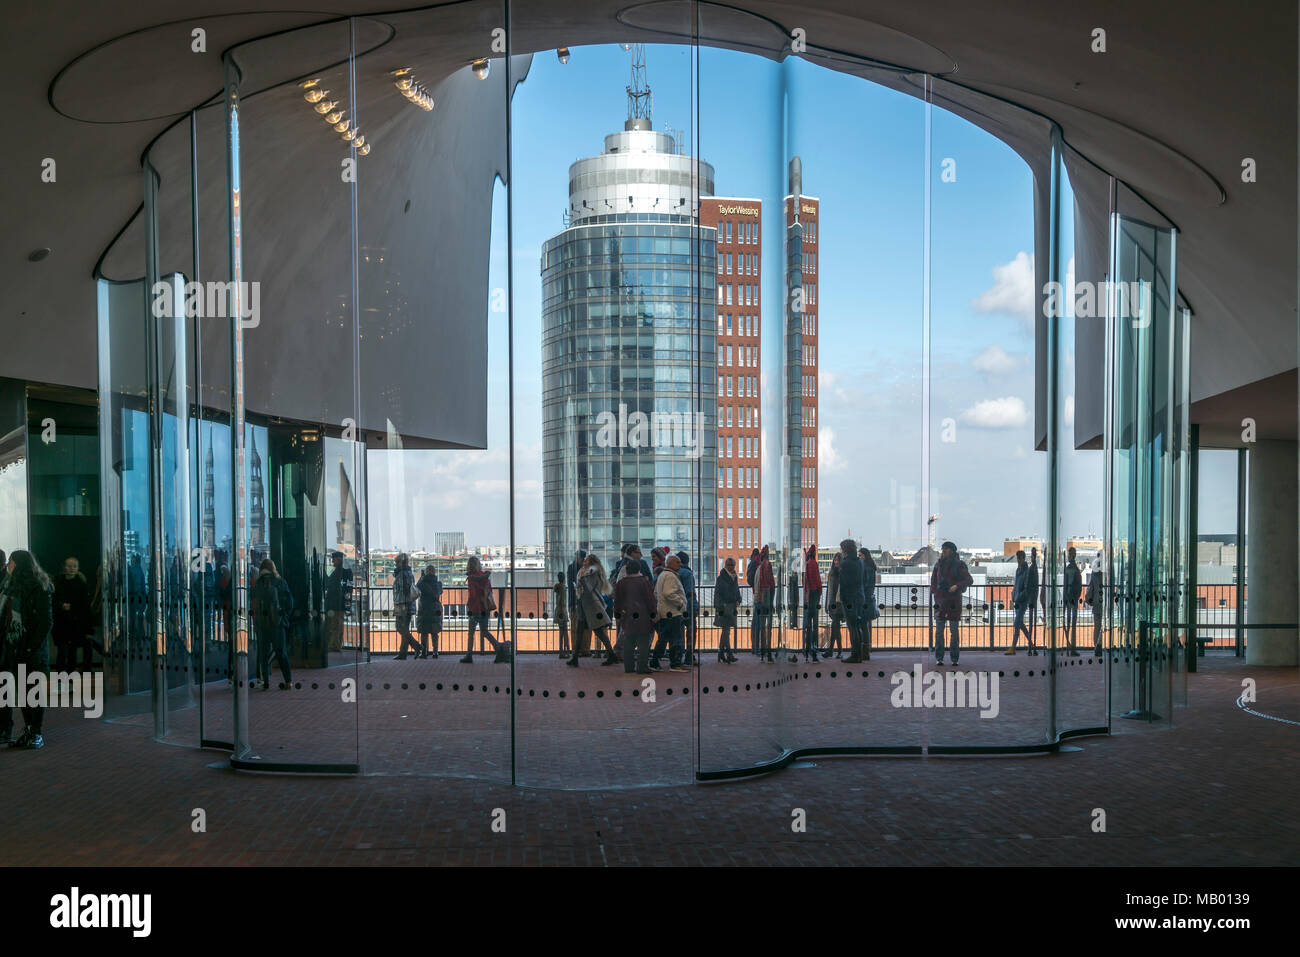 Visitatori sulla piattaforma di osservazione dell'Elbe Philharmonic Hall, Plaza con una vista della Hanseatic Trade Center, Amburgo Foto Stock